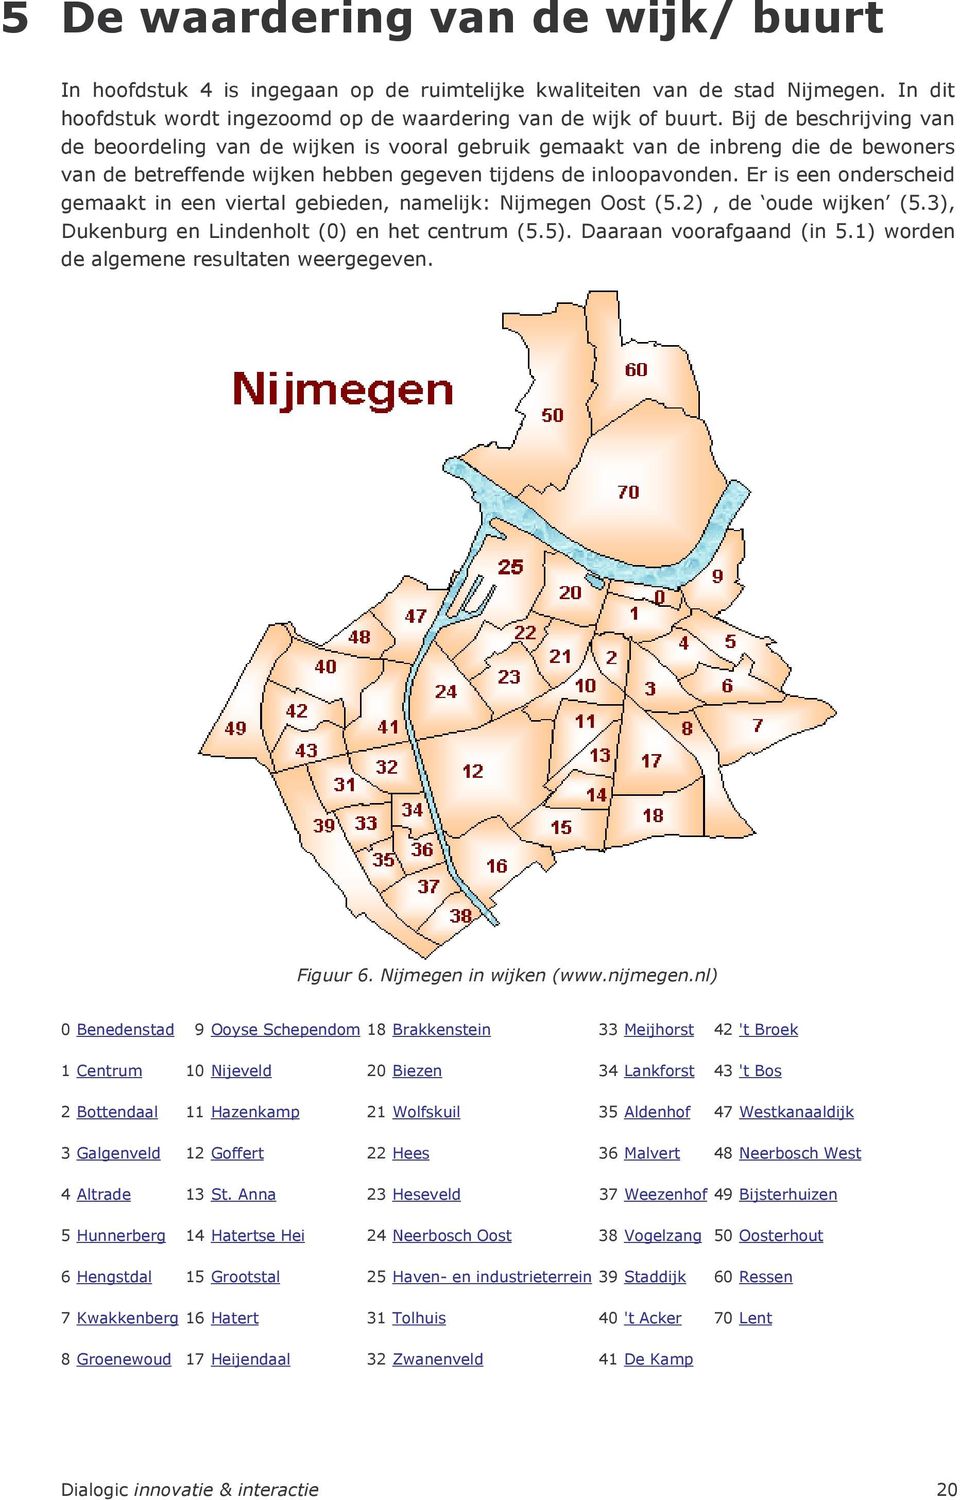 Er is een onderscheid gemaakt in een viertal gebieden, namelijk: Nijmegen Oost (5.2), de oude wijken (5.3), Dukenburg en Lindenholt (0) en het centrum (5.5). Daaraan voorafgaand (in 5.